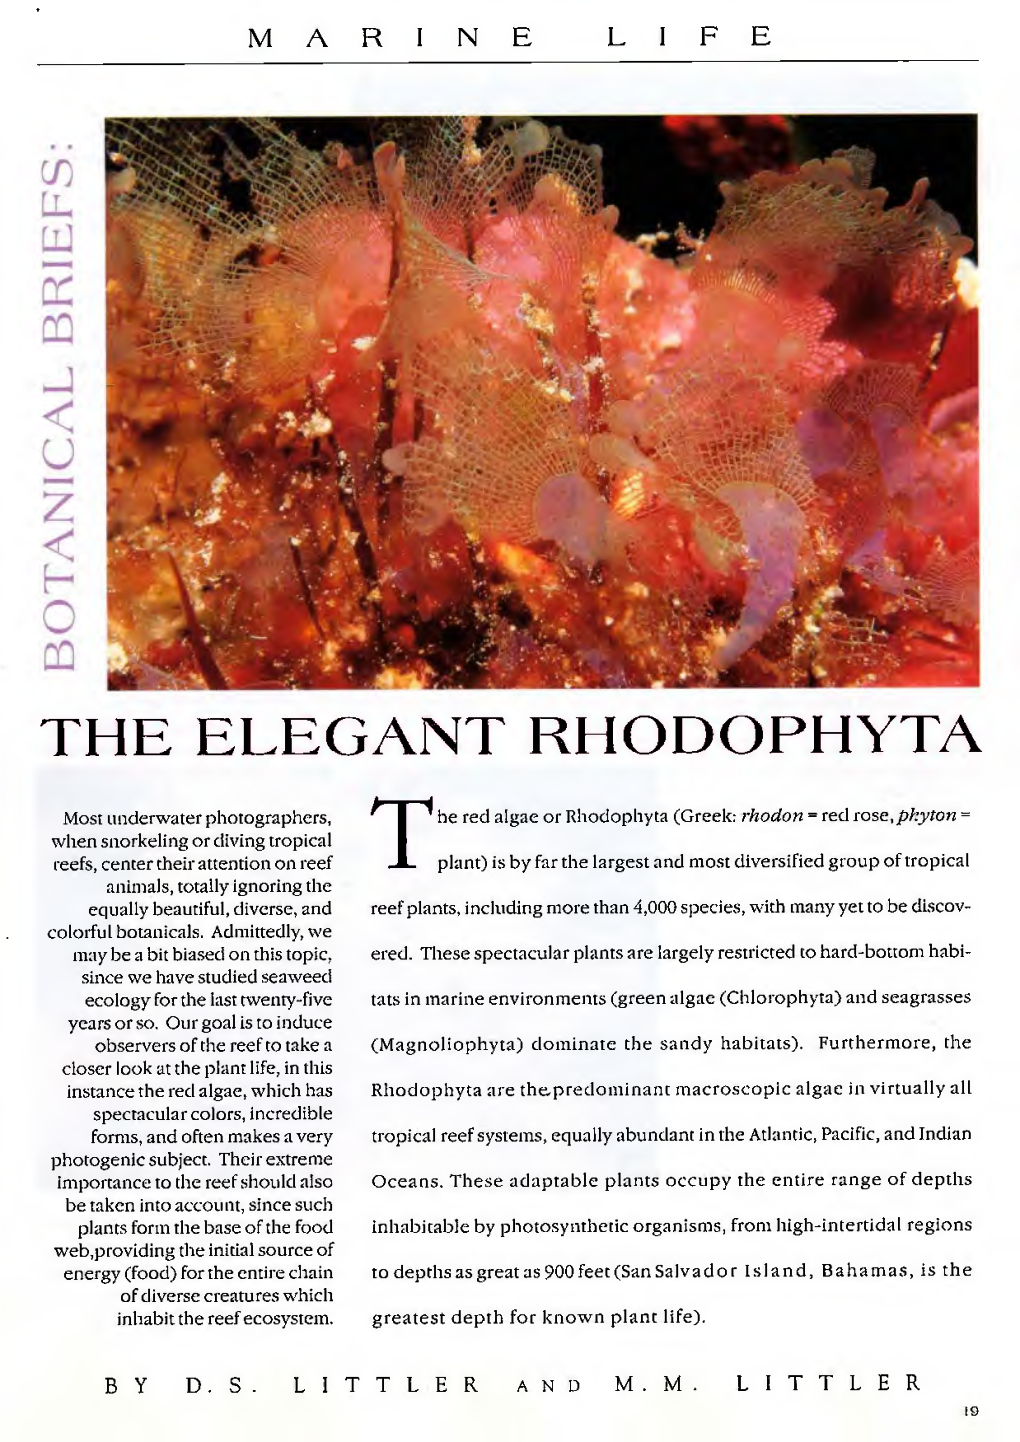 The Elegant Rhodophyta